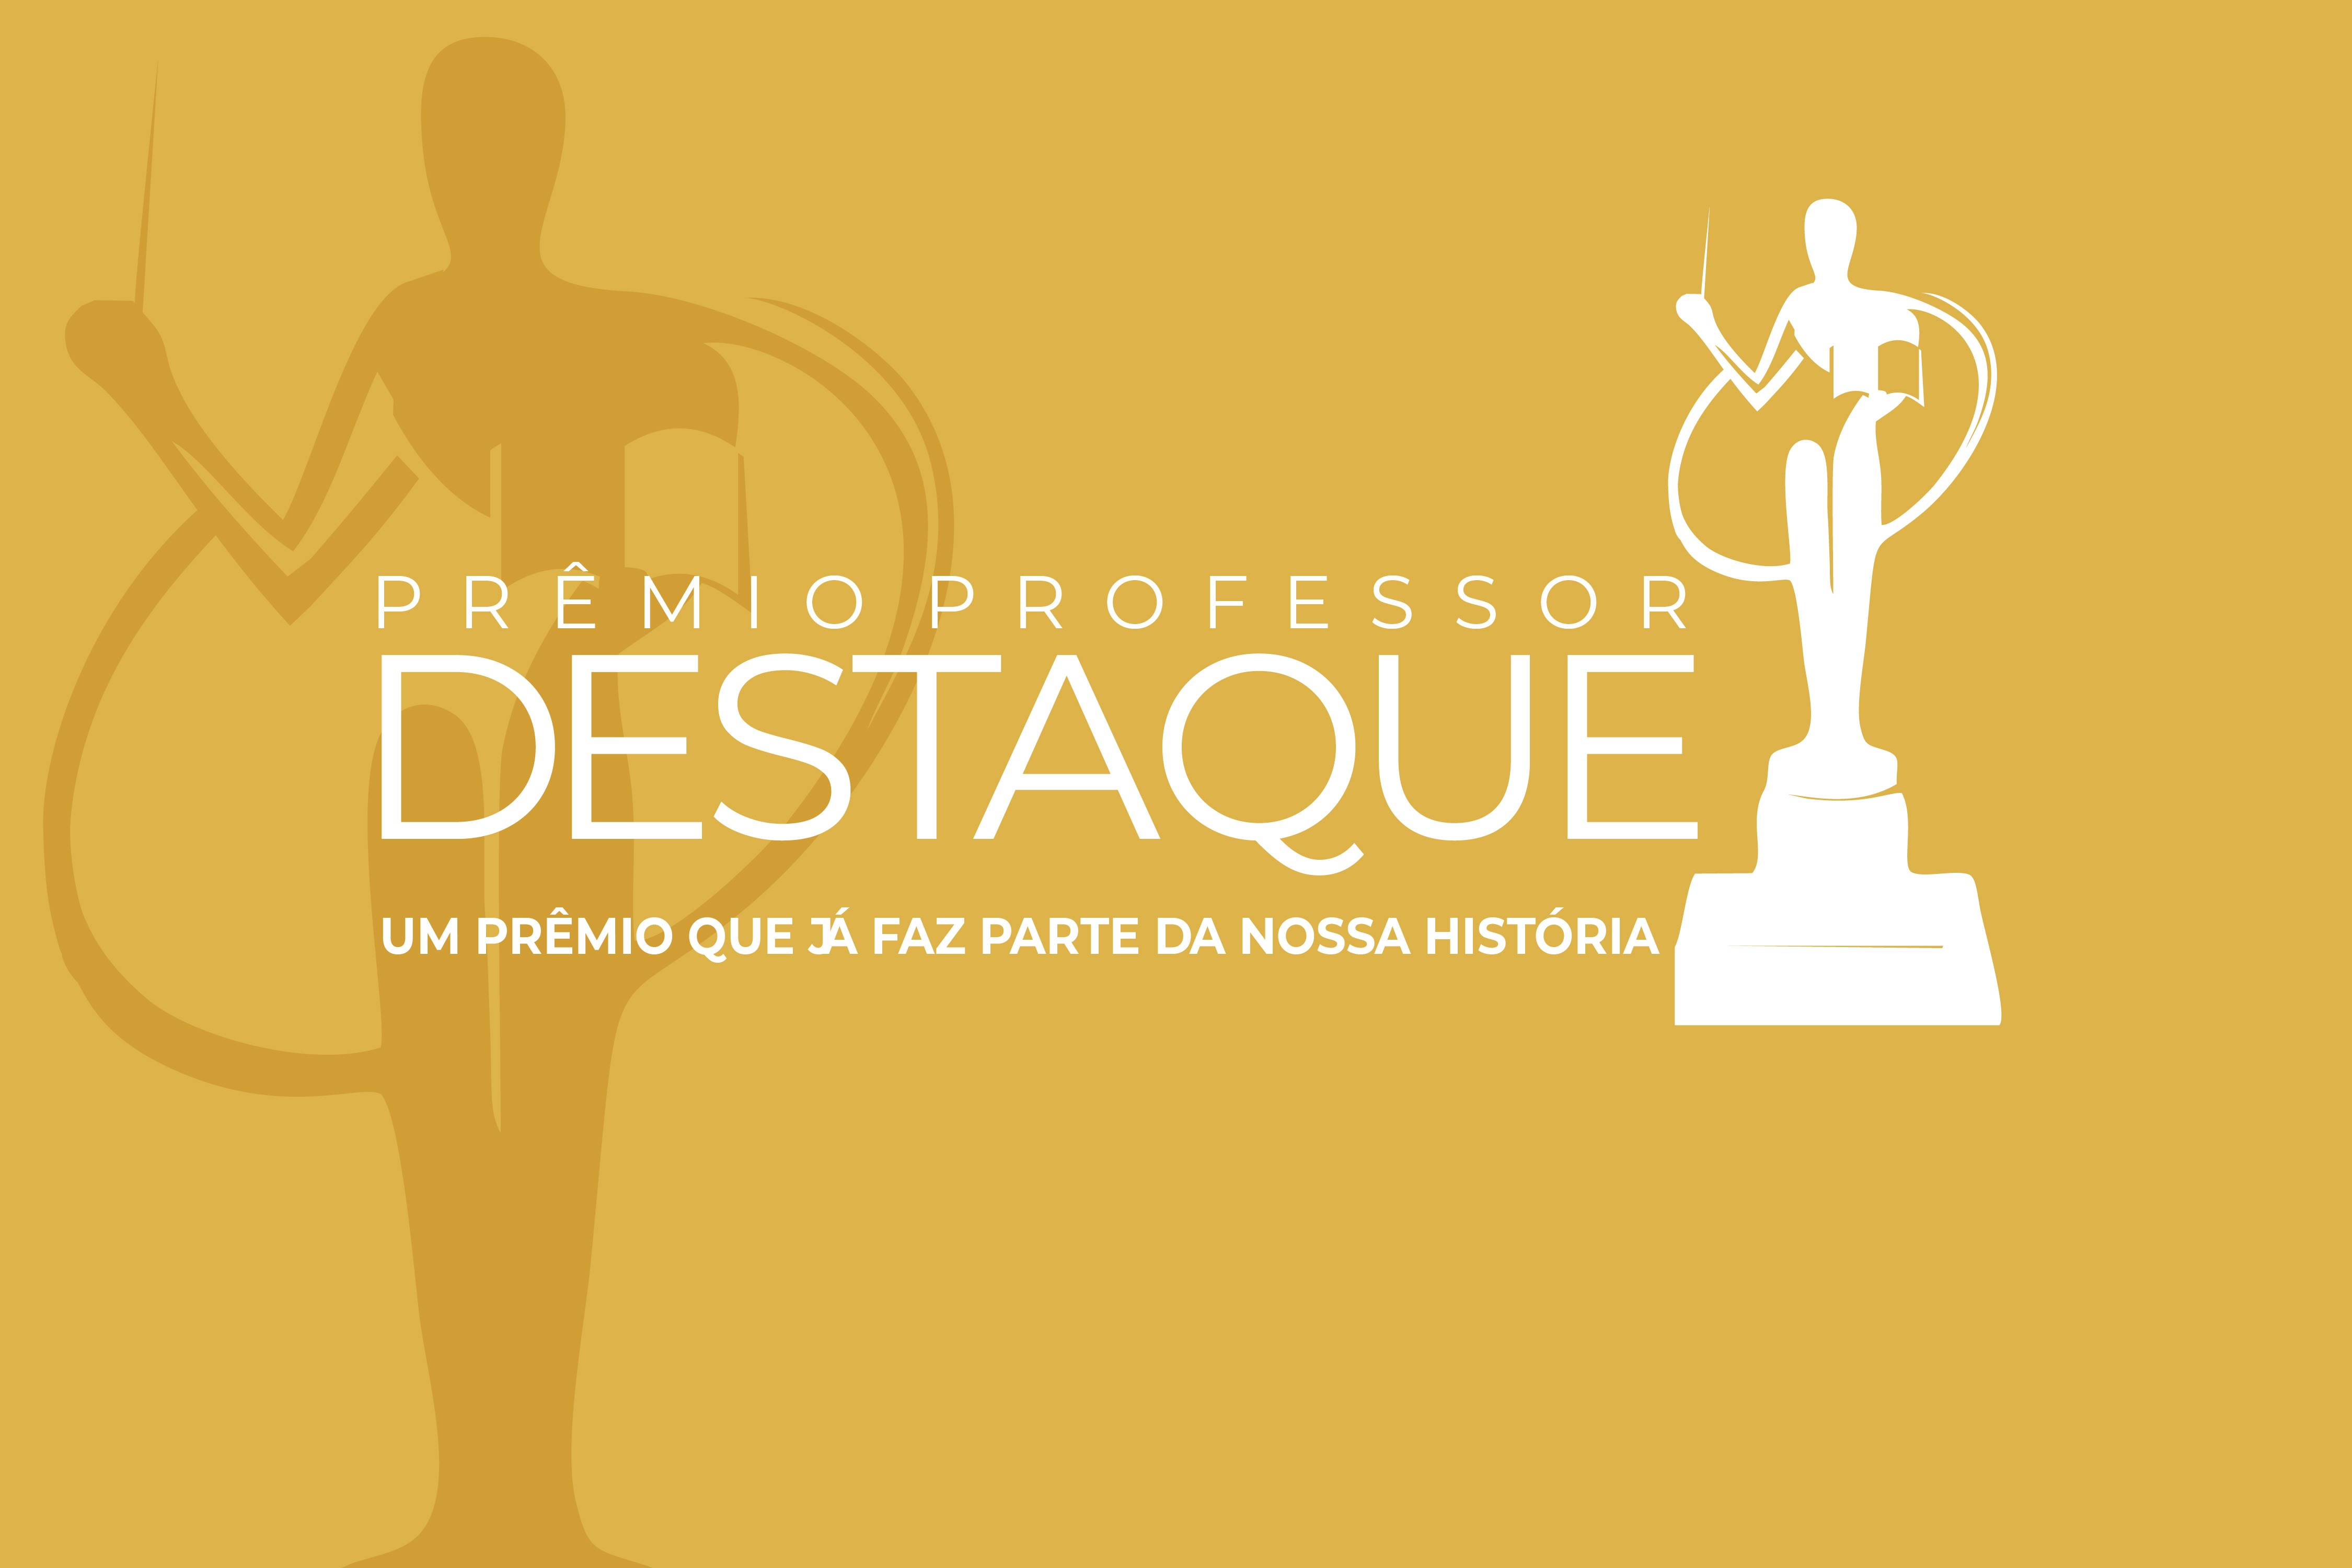 VIII Prêmio Professor Destaque será realizado hoje em Três Lagoas